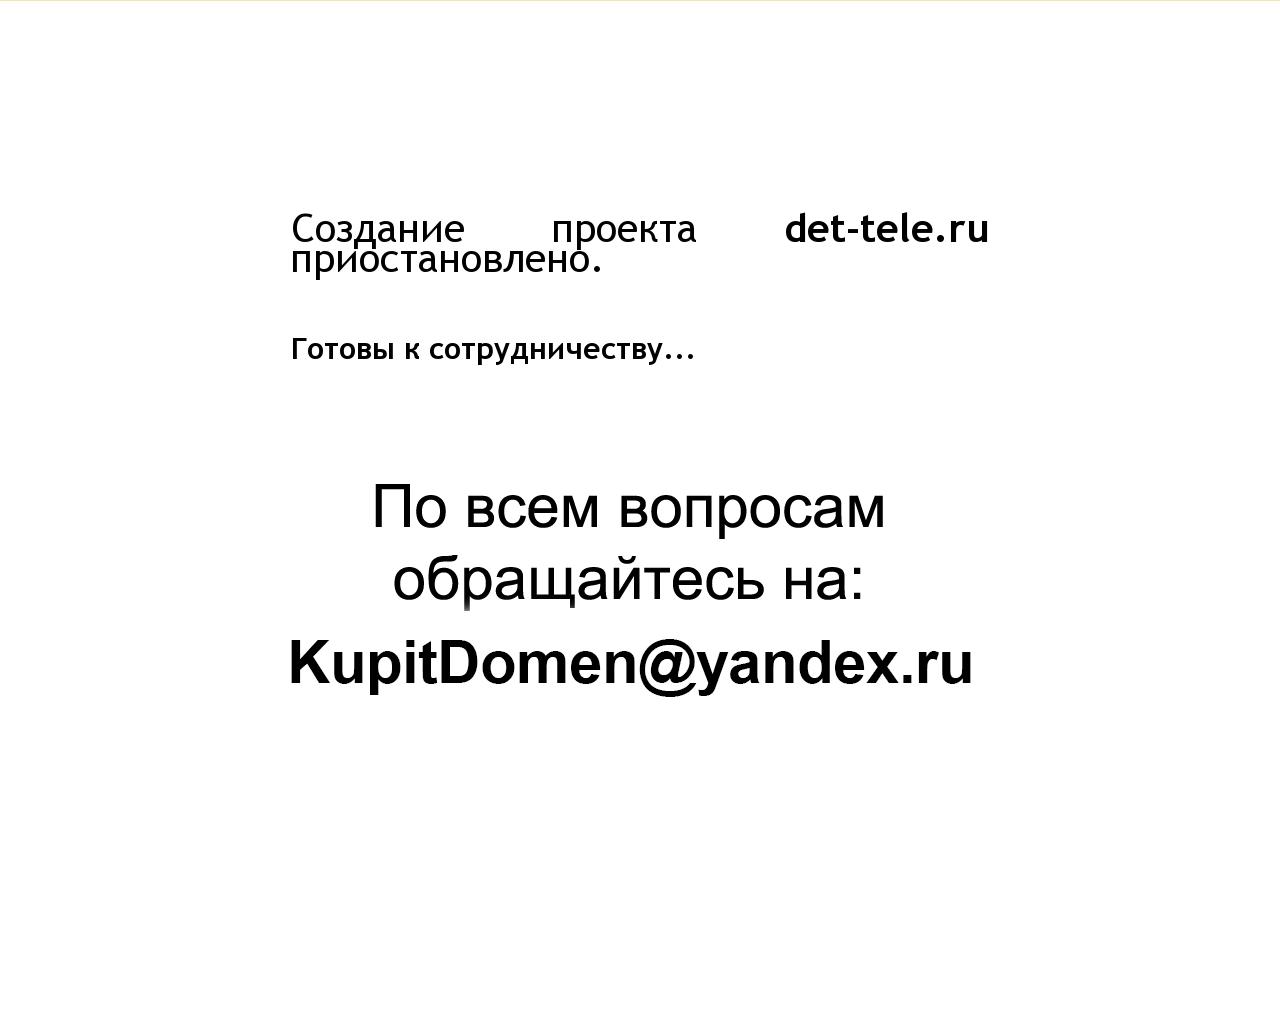 Изображение сайта det-tele.ru в разрешении 1280x1024